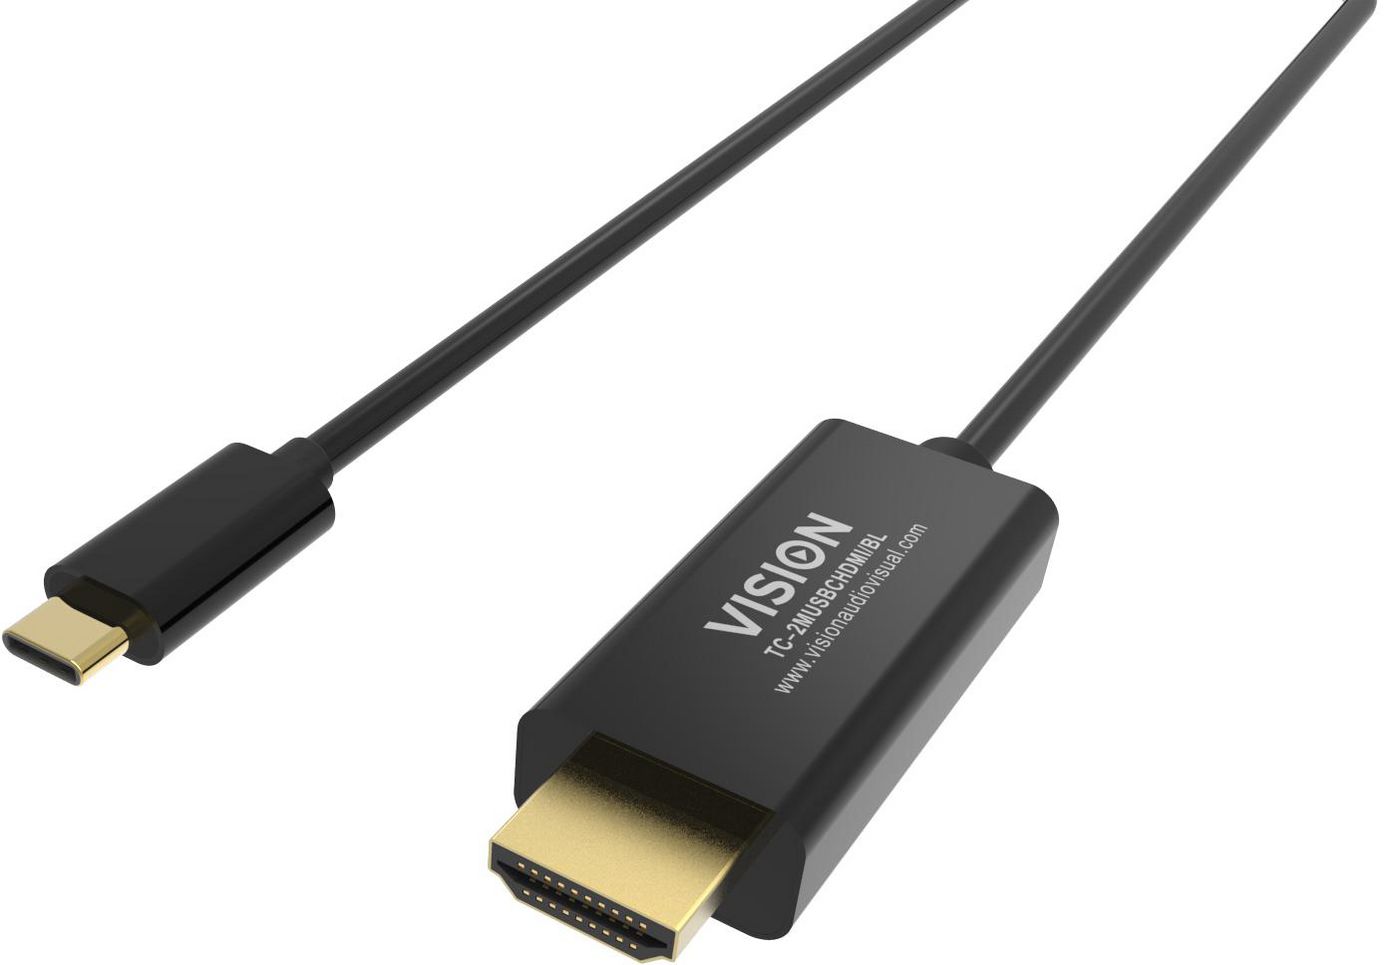 VISION Professional - Videokabel - HDMI / USB - USB-C (M) bis HDMI (M) - 2 m - Schwarz - 4K Unterstü